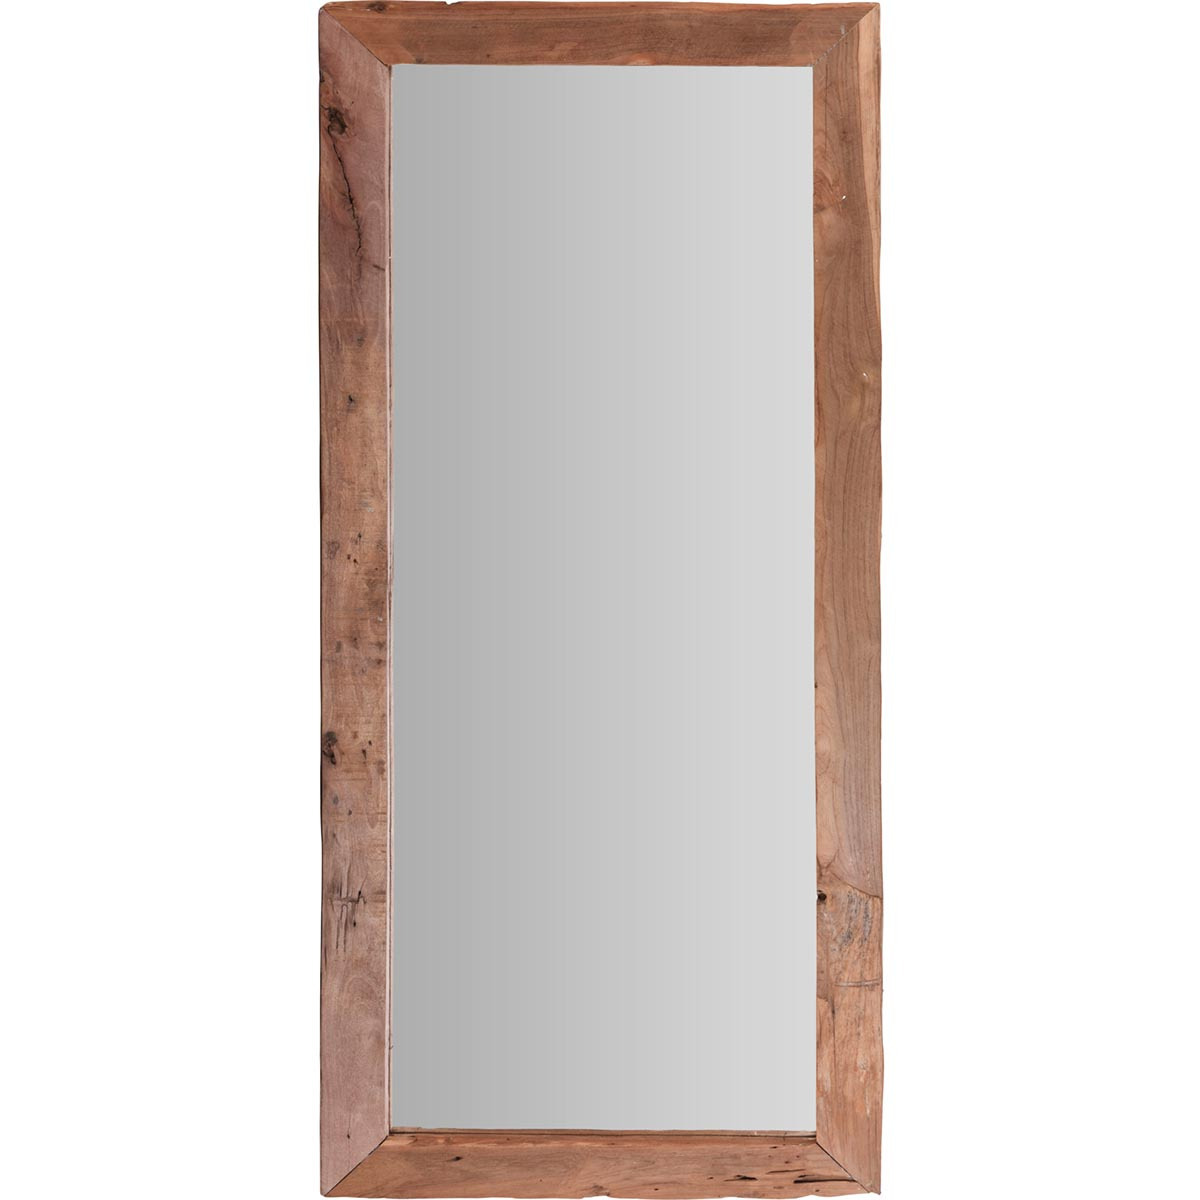 Spiegel-wandspiegel teak hout bruin rechthoek 100 x 70 cm